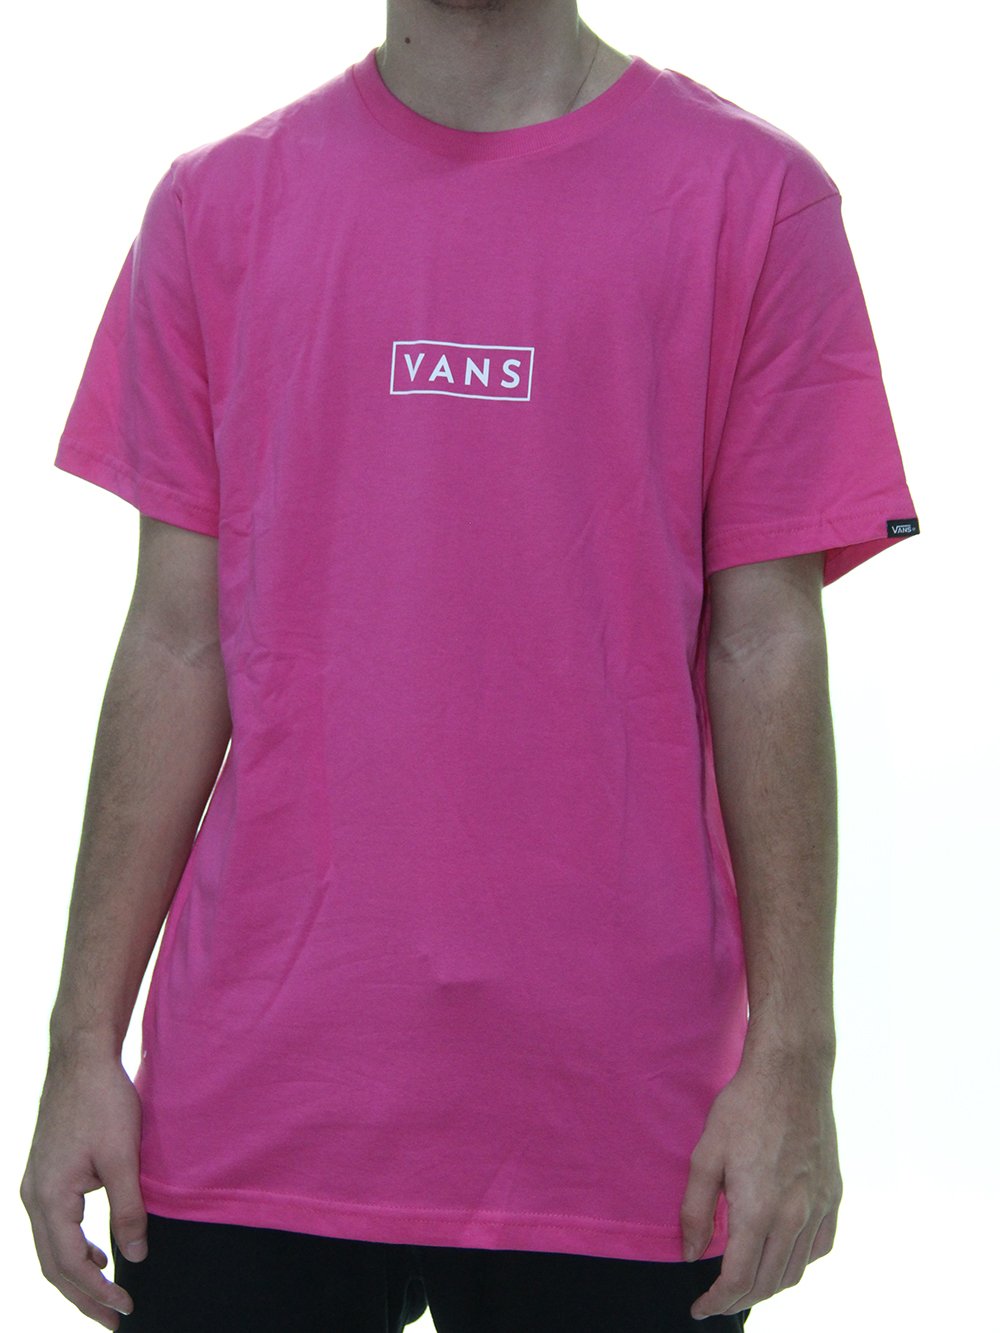 vans camiseta rosa